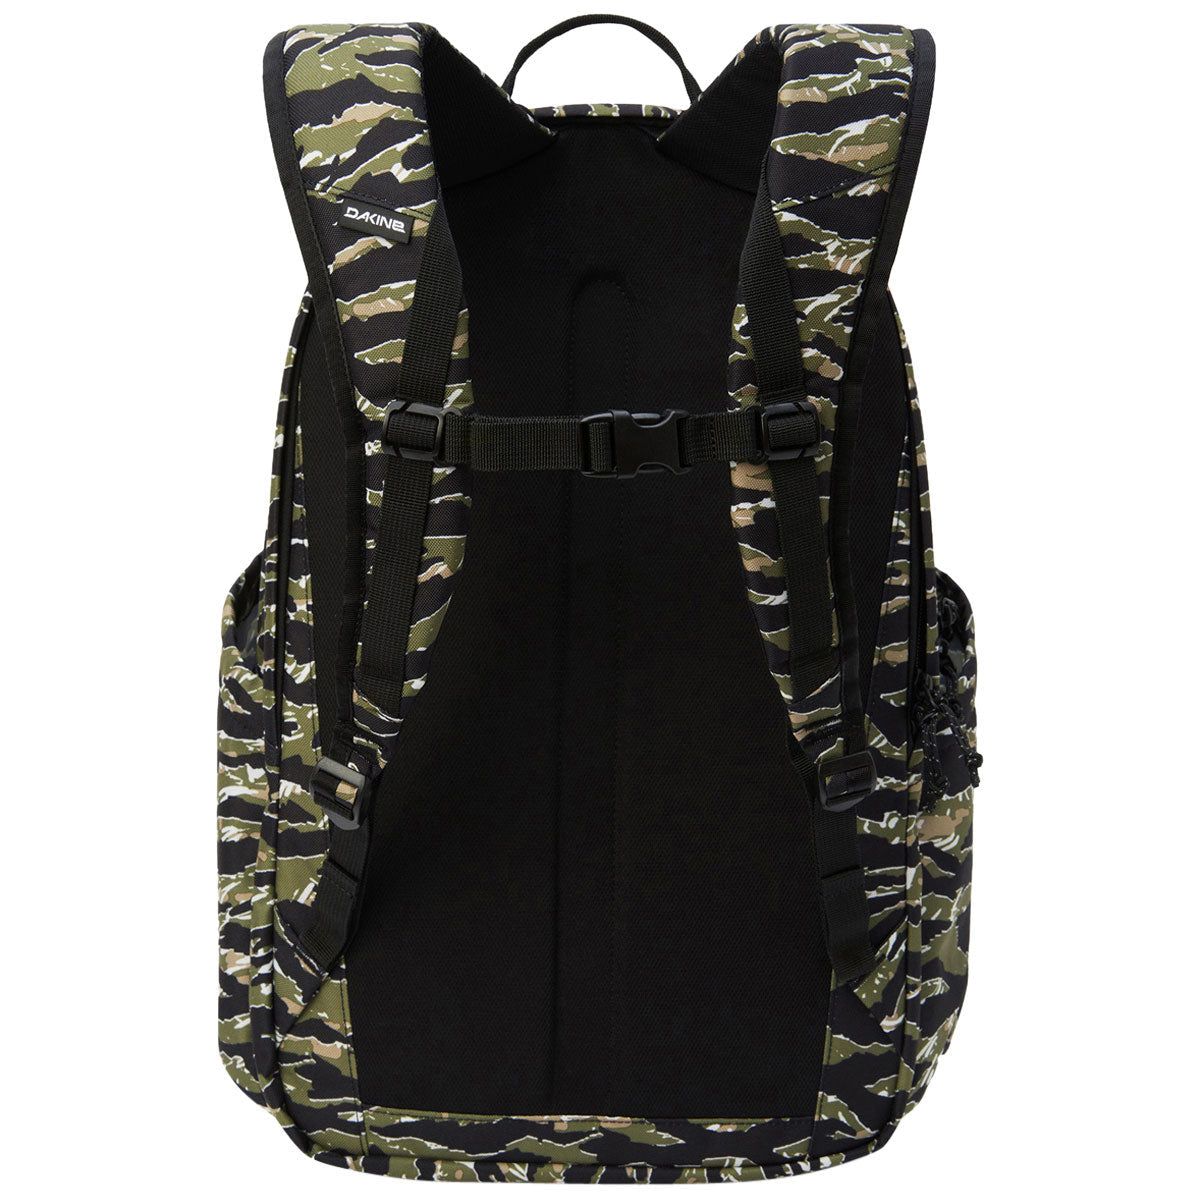 Dakine Method 32L Backpack - Tiger Camo image 2